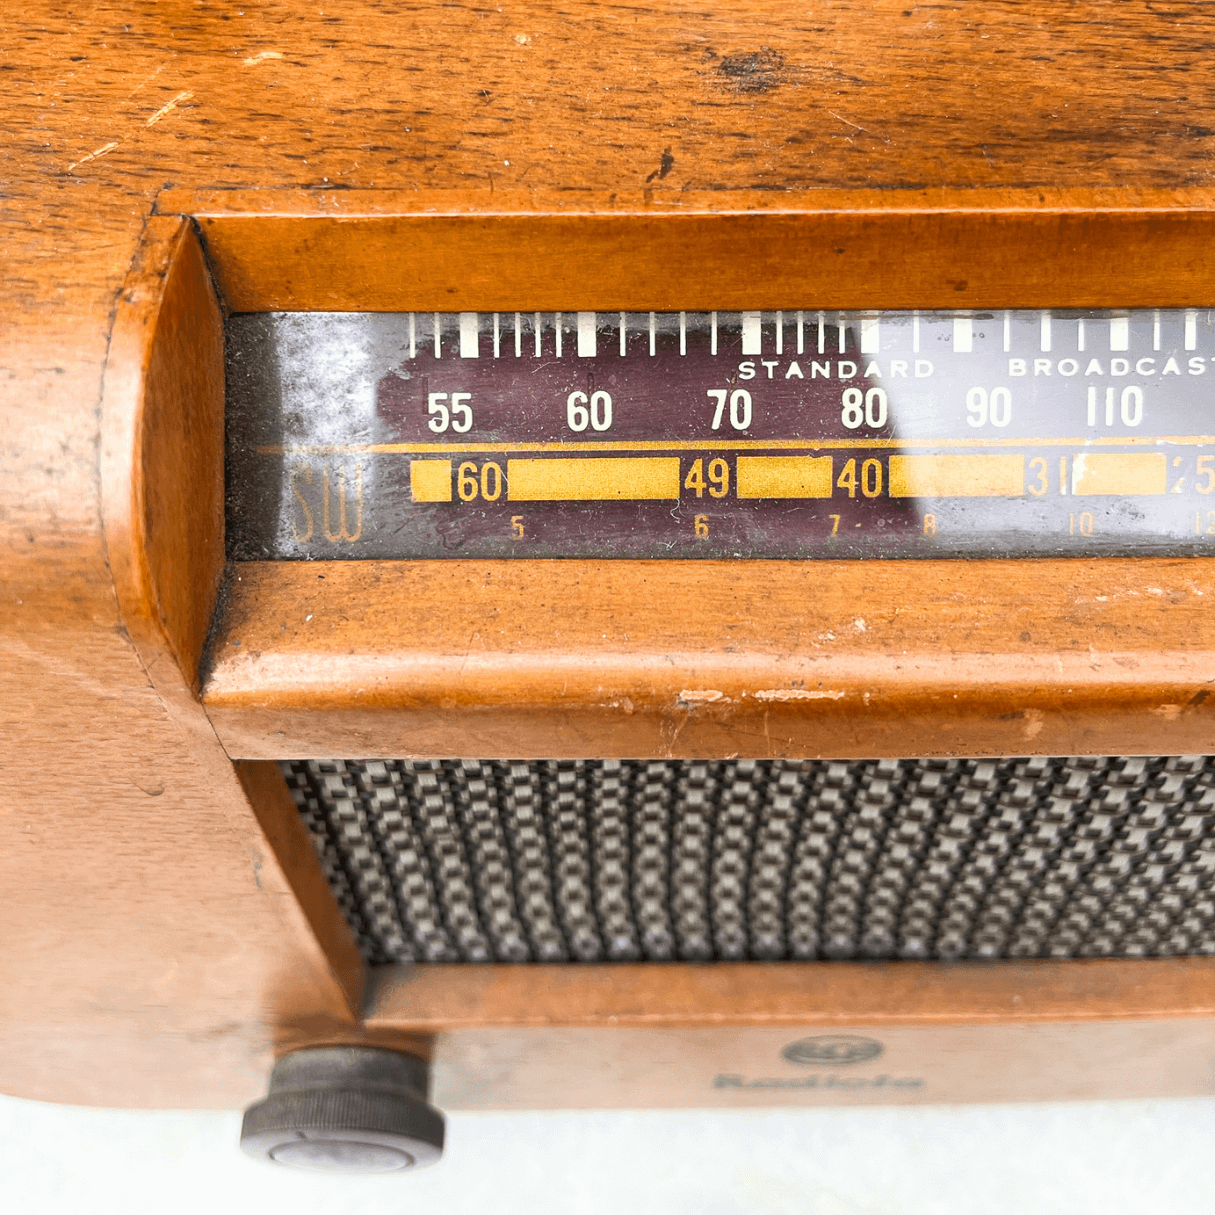 Rádio Vintage Valvulado RCA Radiola anos 1940